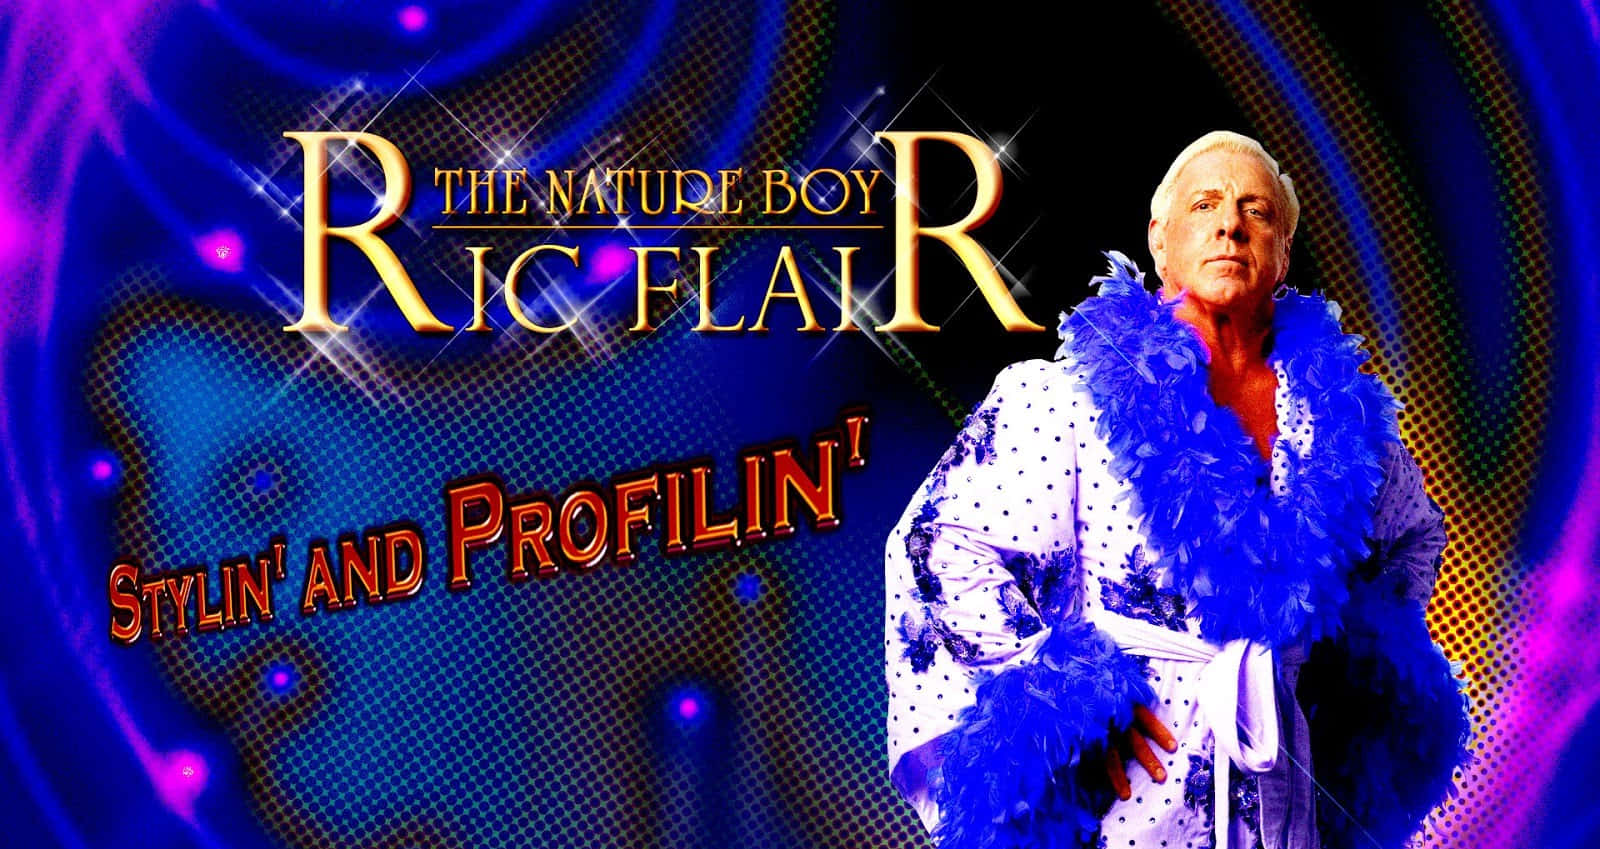 Ric Flair Stylin And Profilin